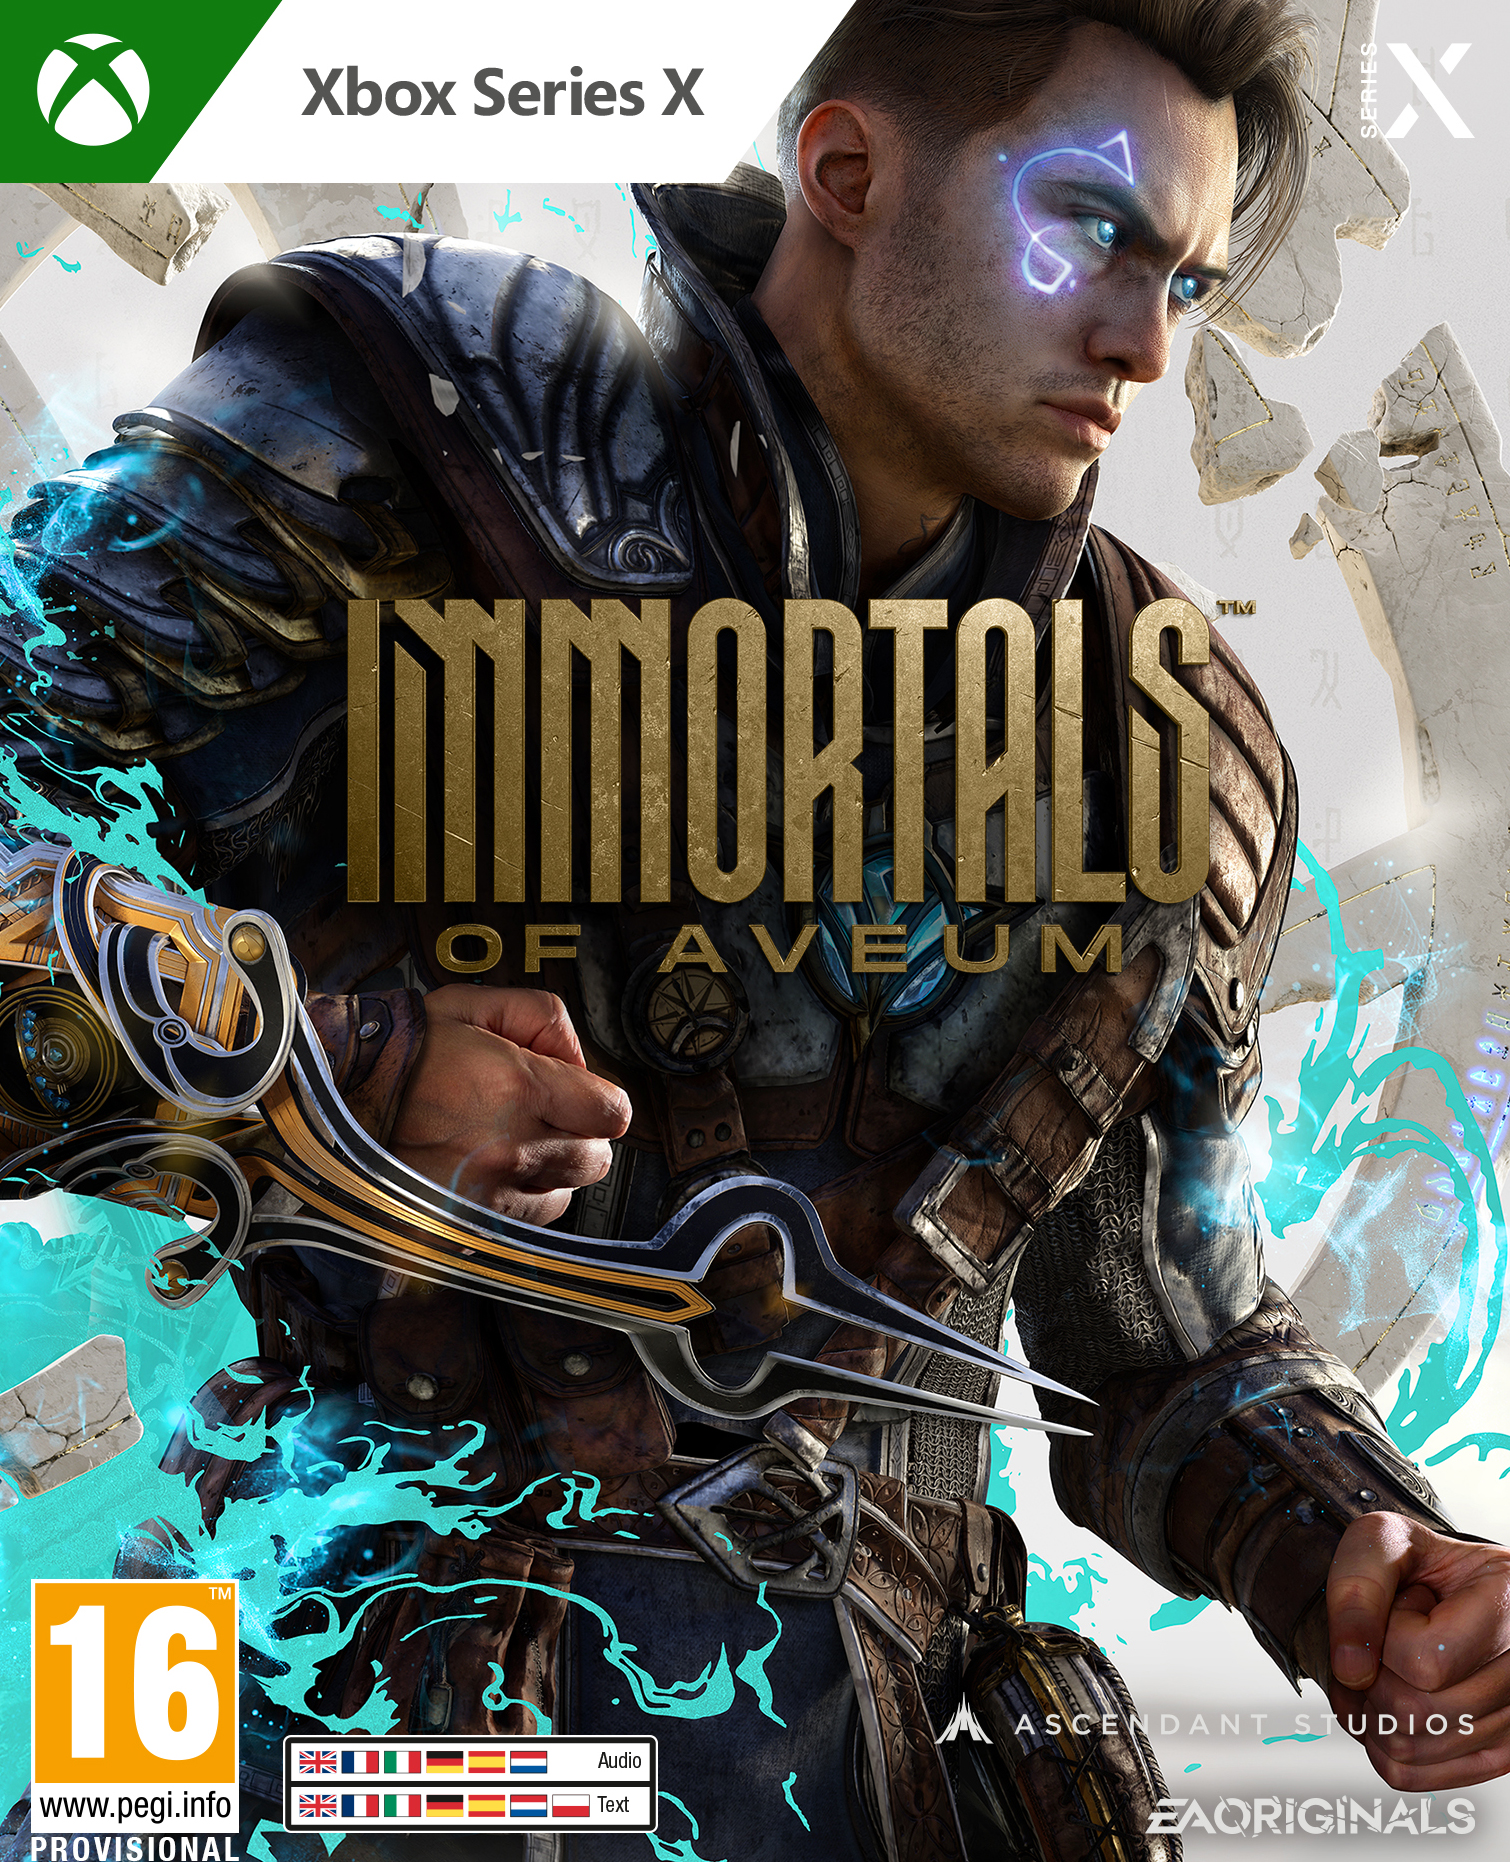 Xbox One/Series X Immortals of Aveum + Pre-Order bonus